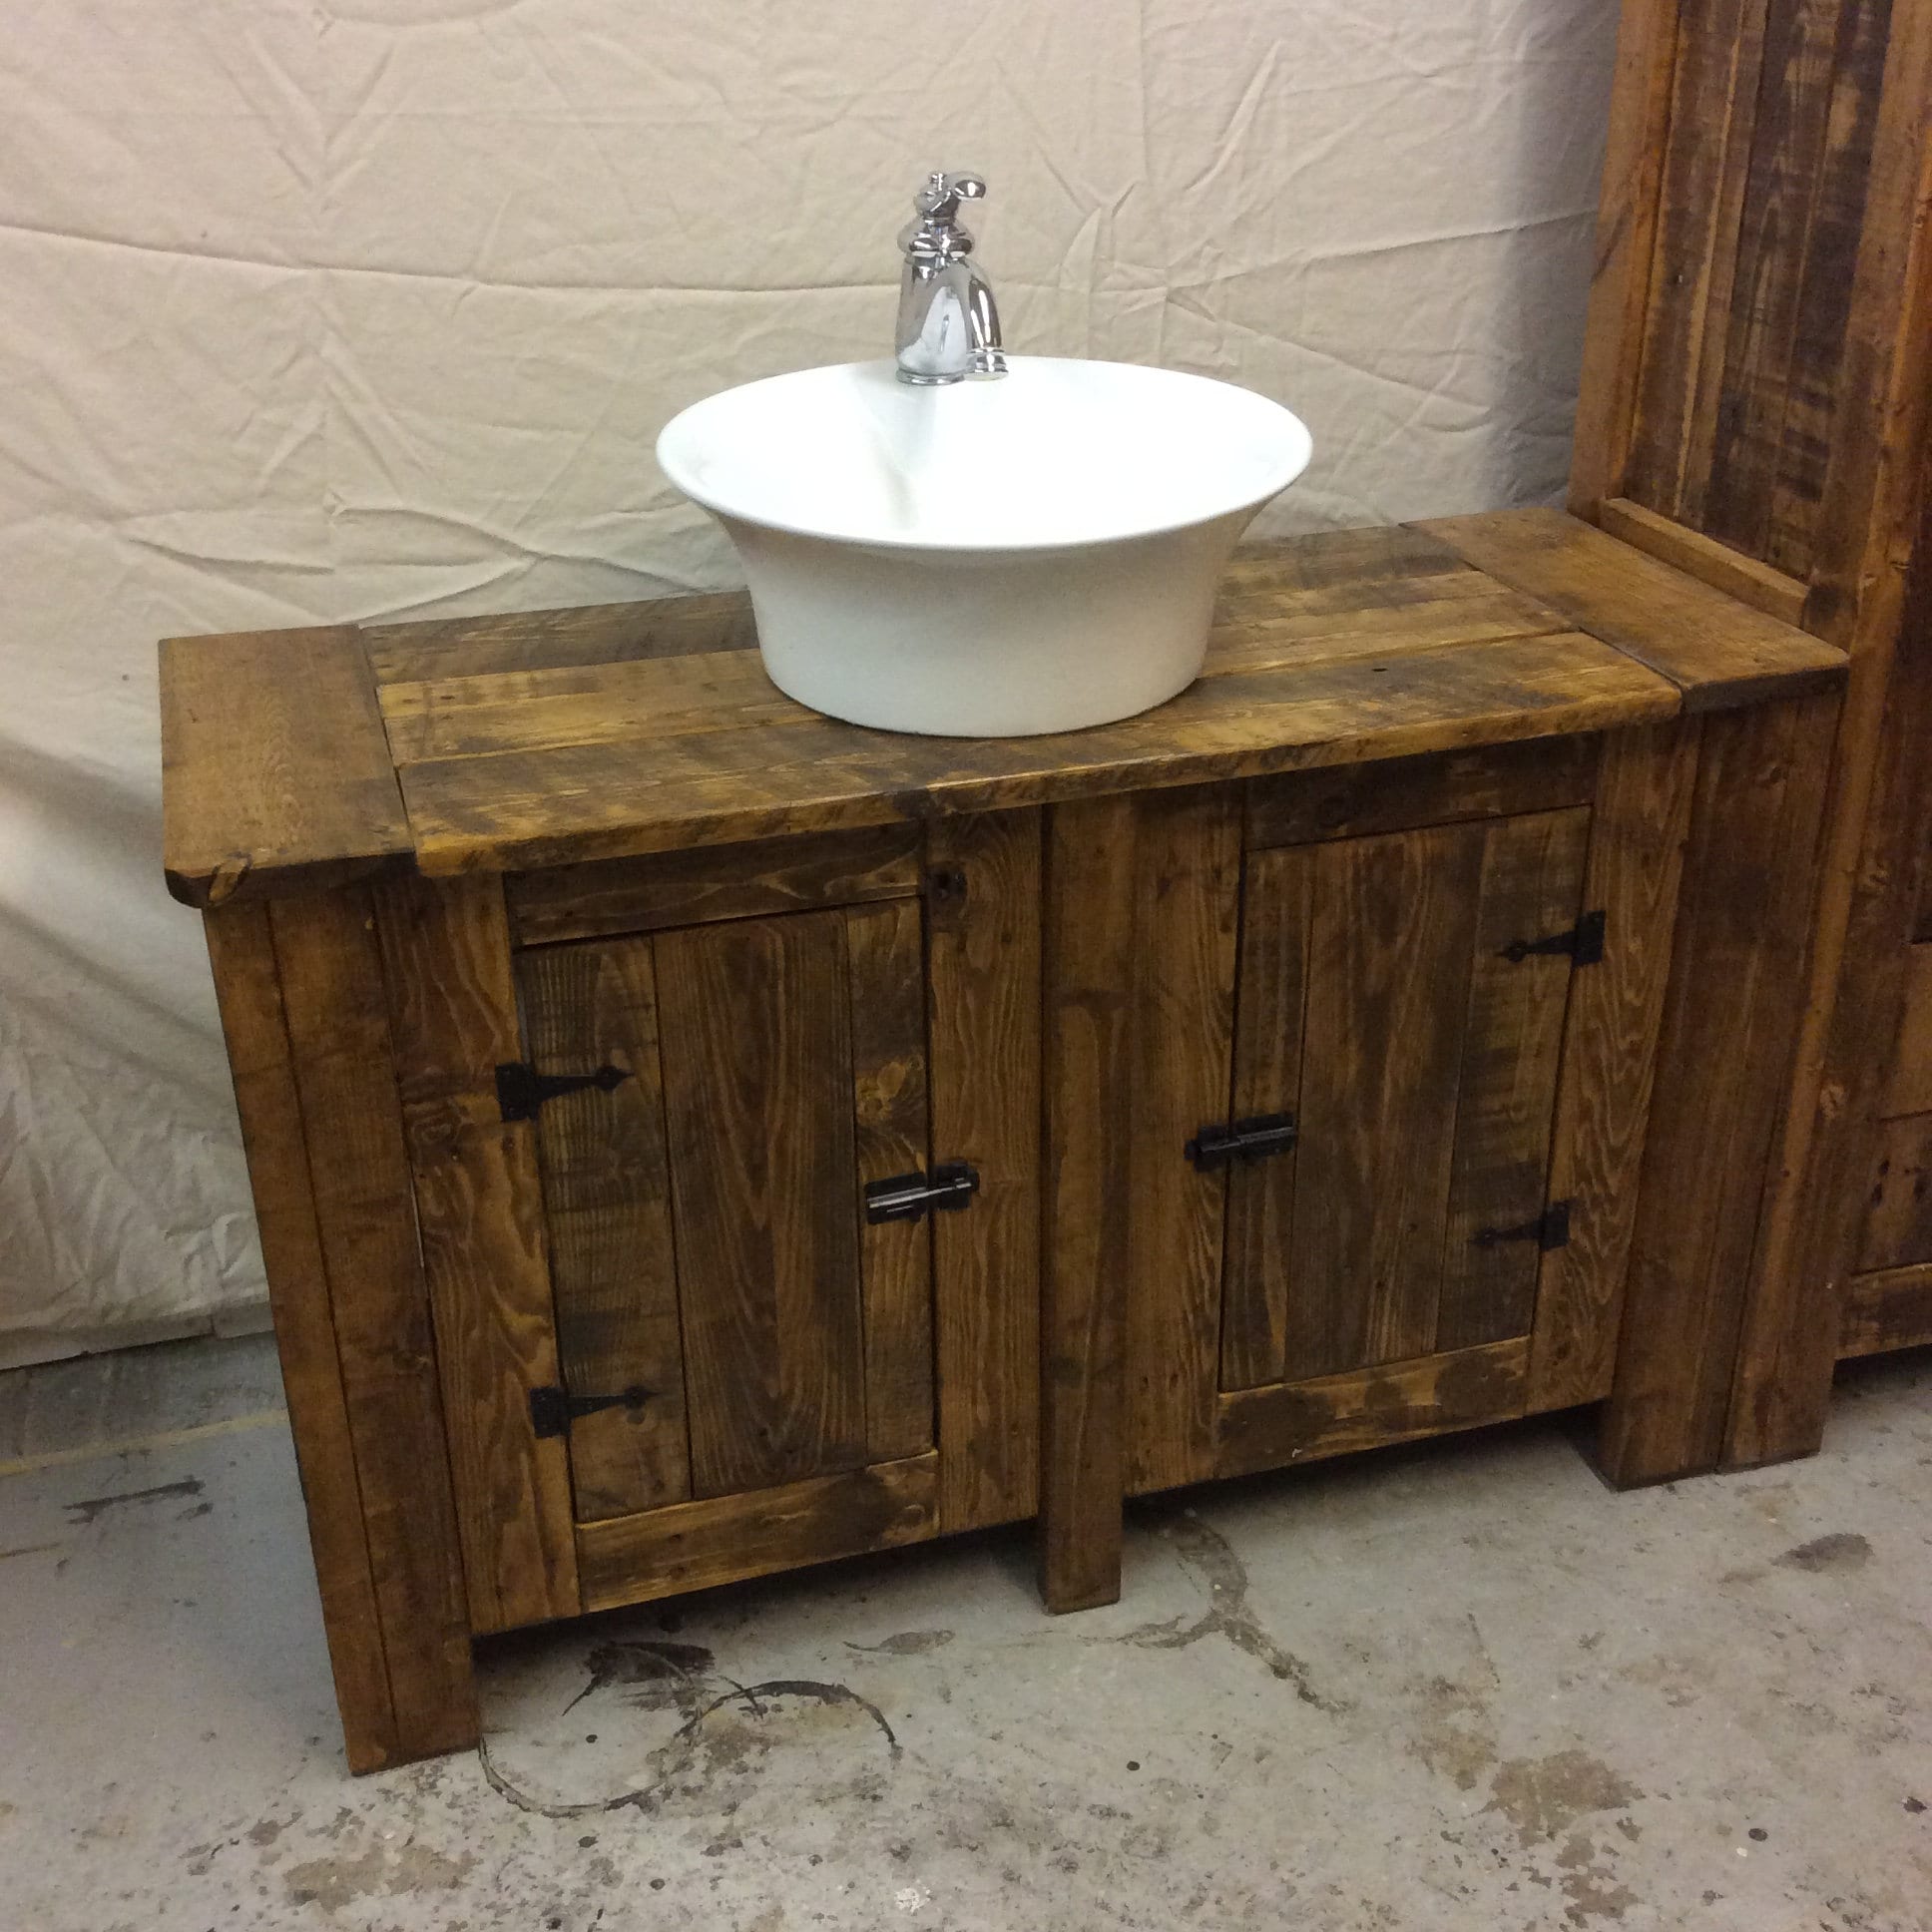 Rustic Reclaimed Wood Bathroom Vanity and Storage Cupboard | Etsy